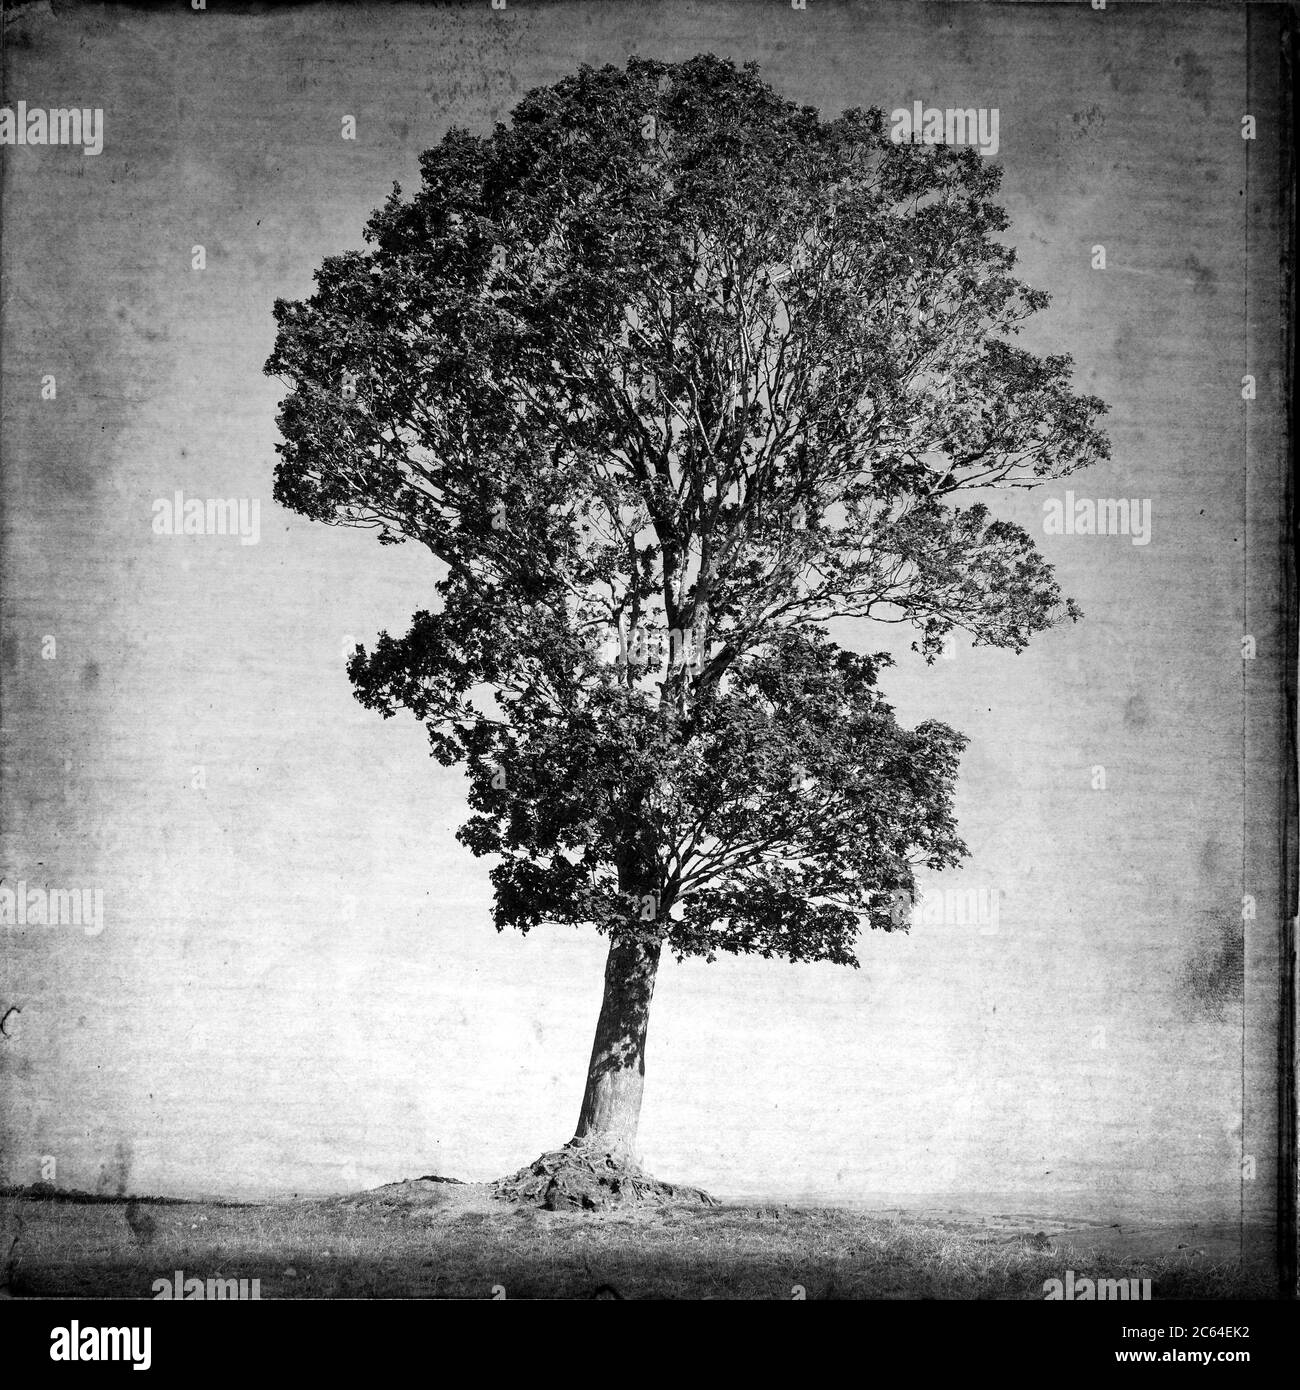 Baum, texturierter Kunsteffekt im Vintage-Look, Cantal, Auvergne-Rhone-Alpes, Frankreich Stockfoto